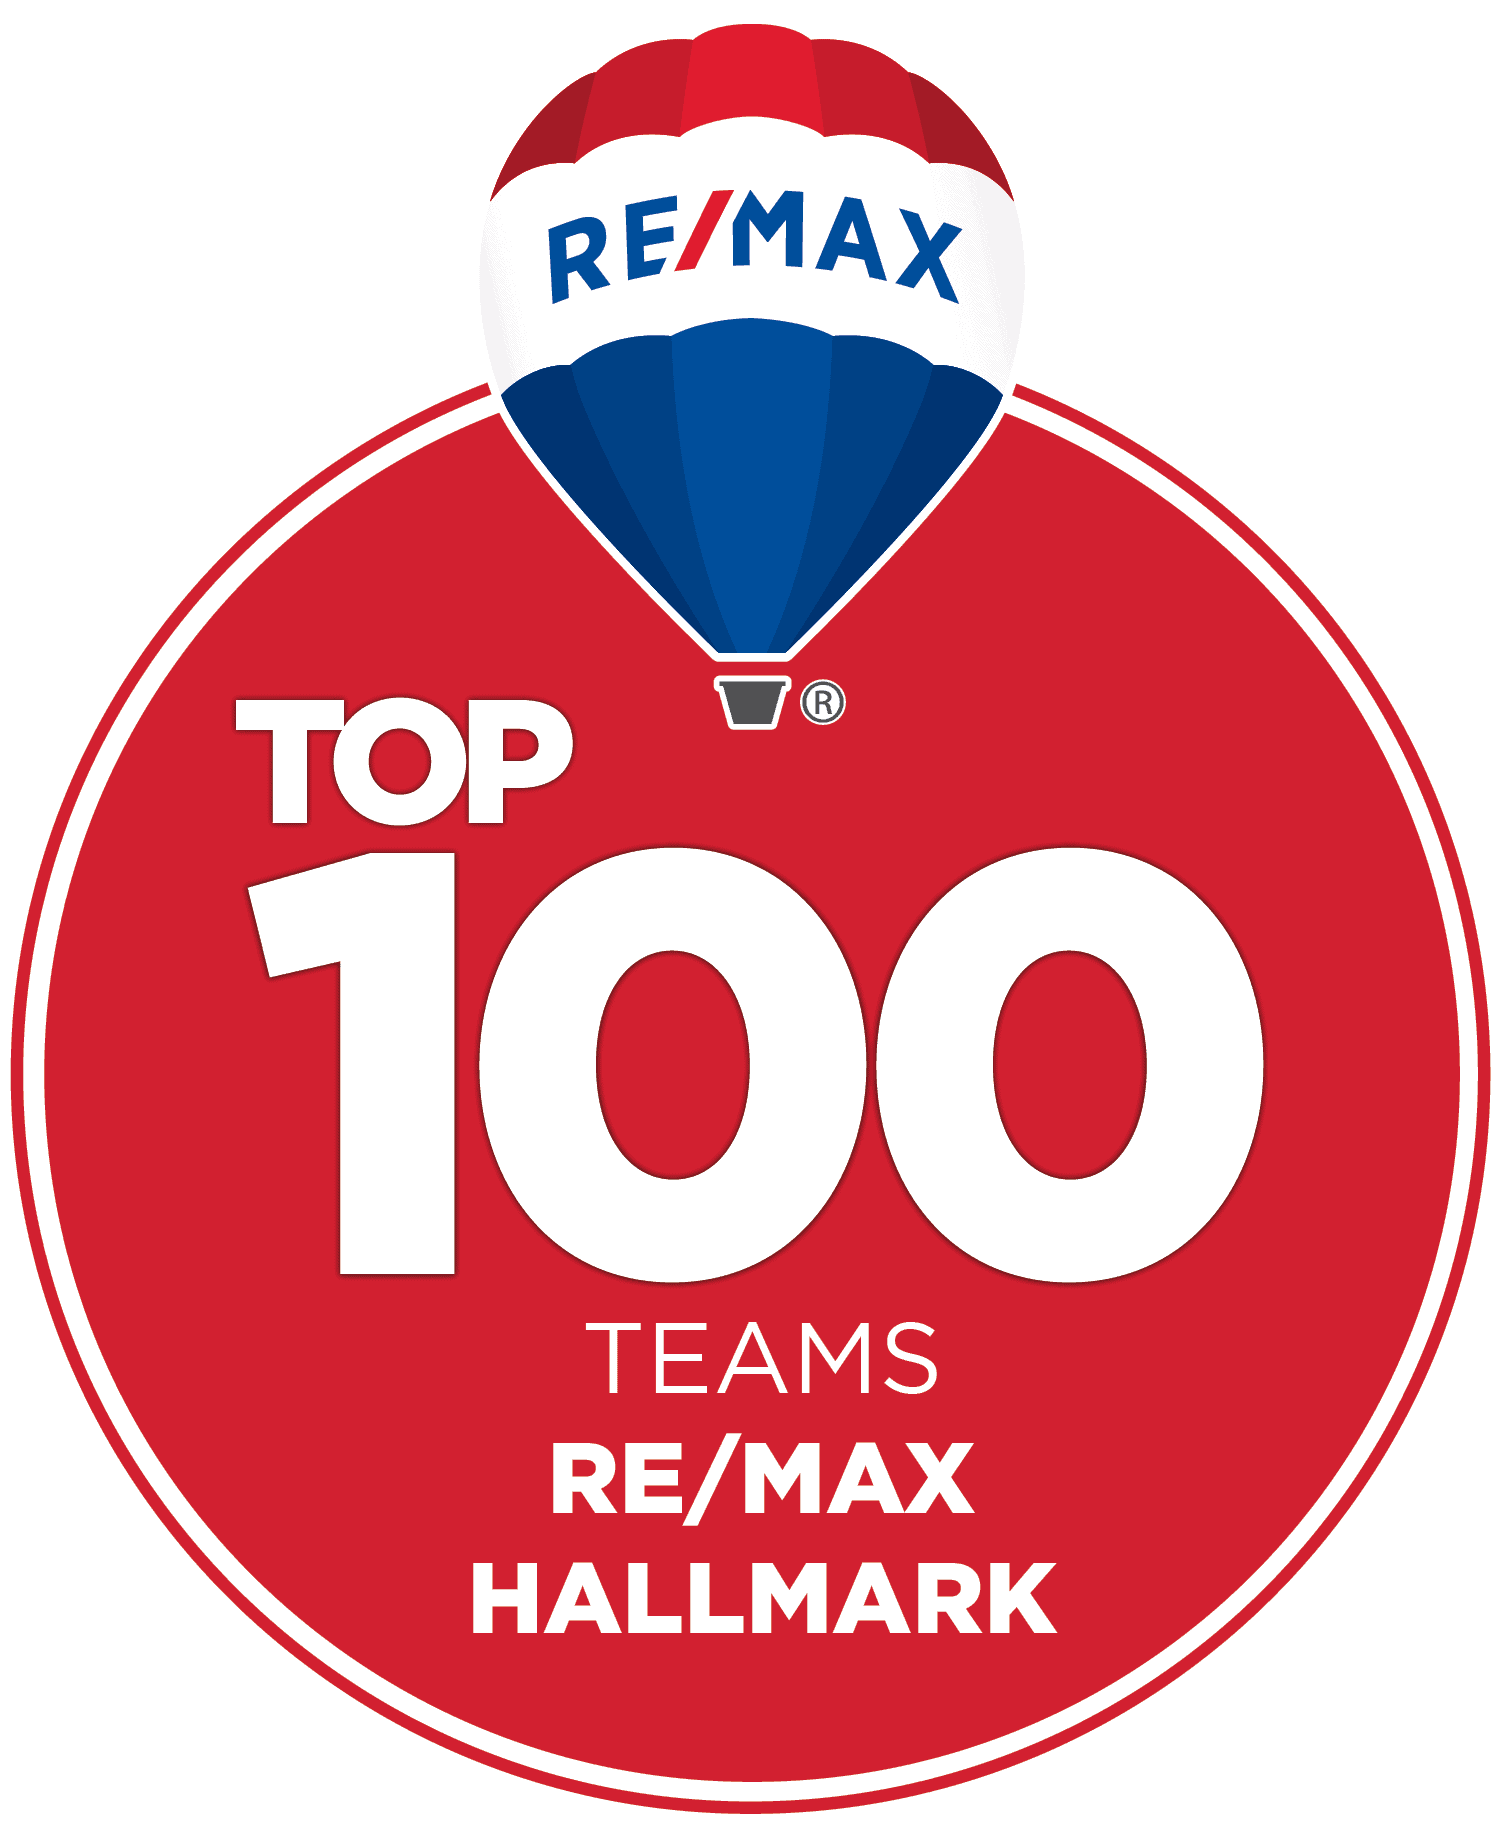 HALLMARK TOP 100 TEAMS